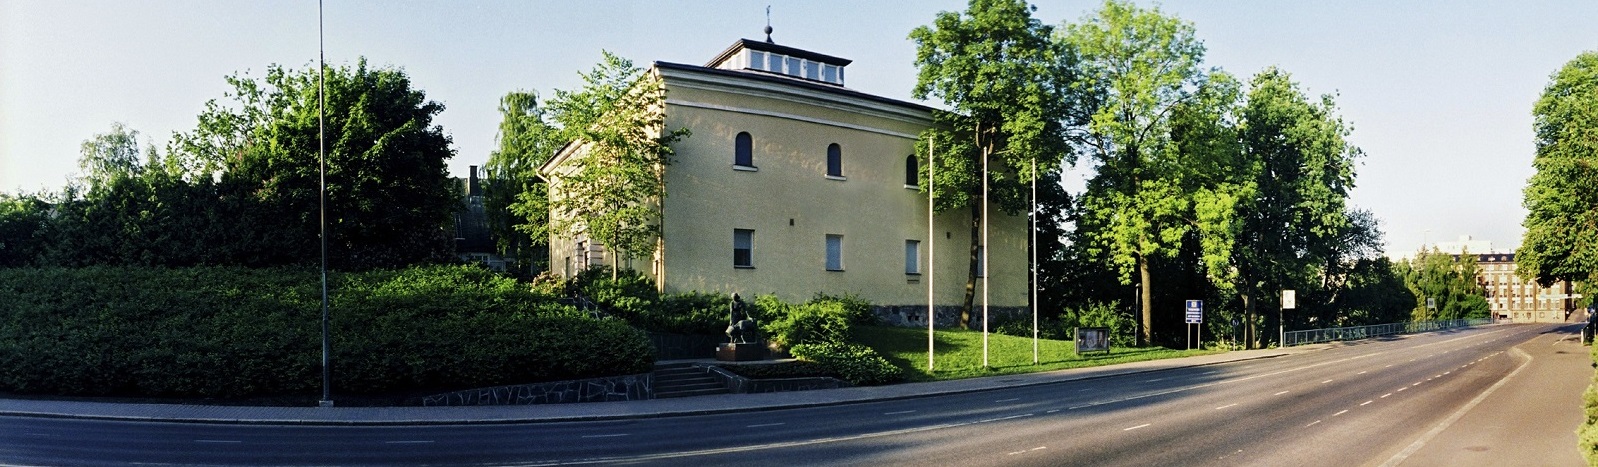 Hämeenlinnan taidemuseo